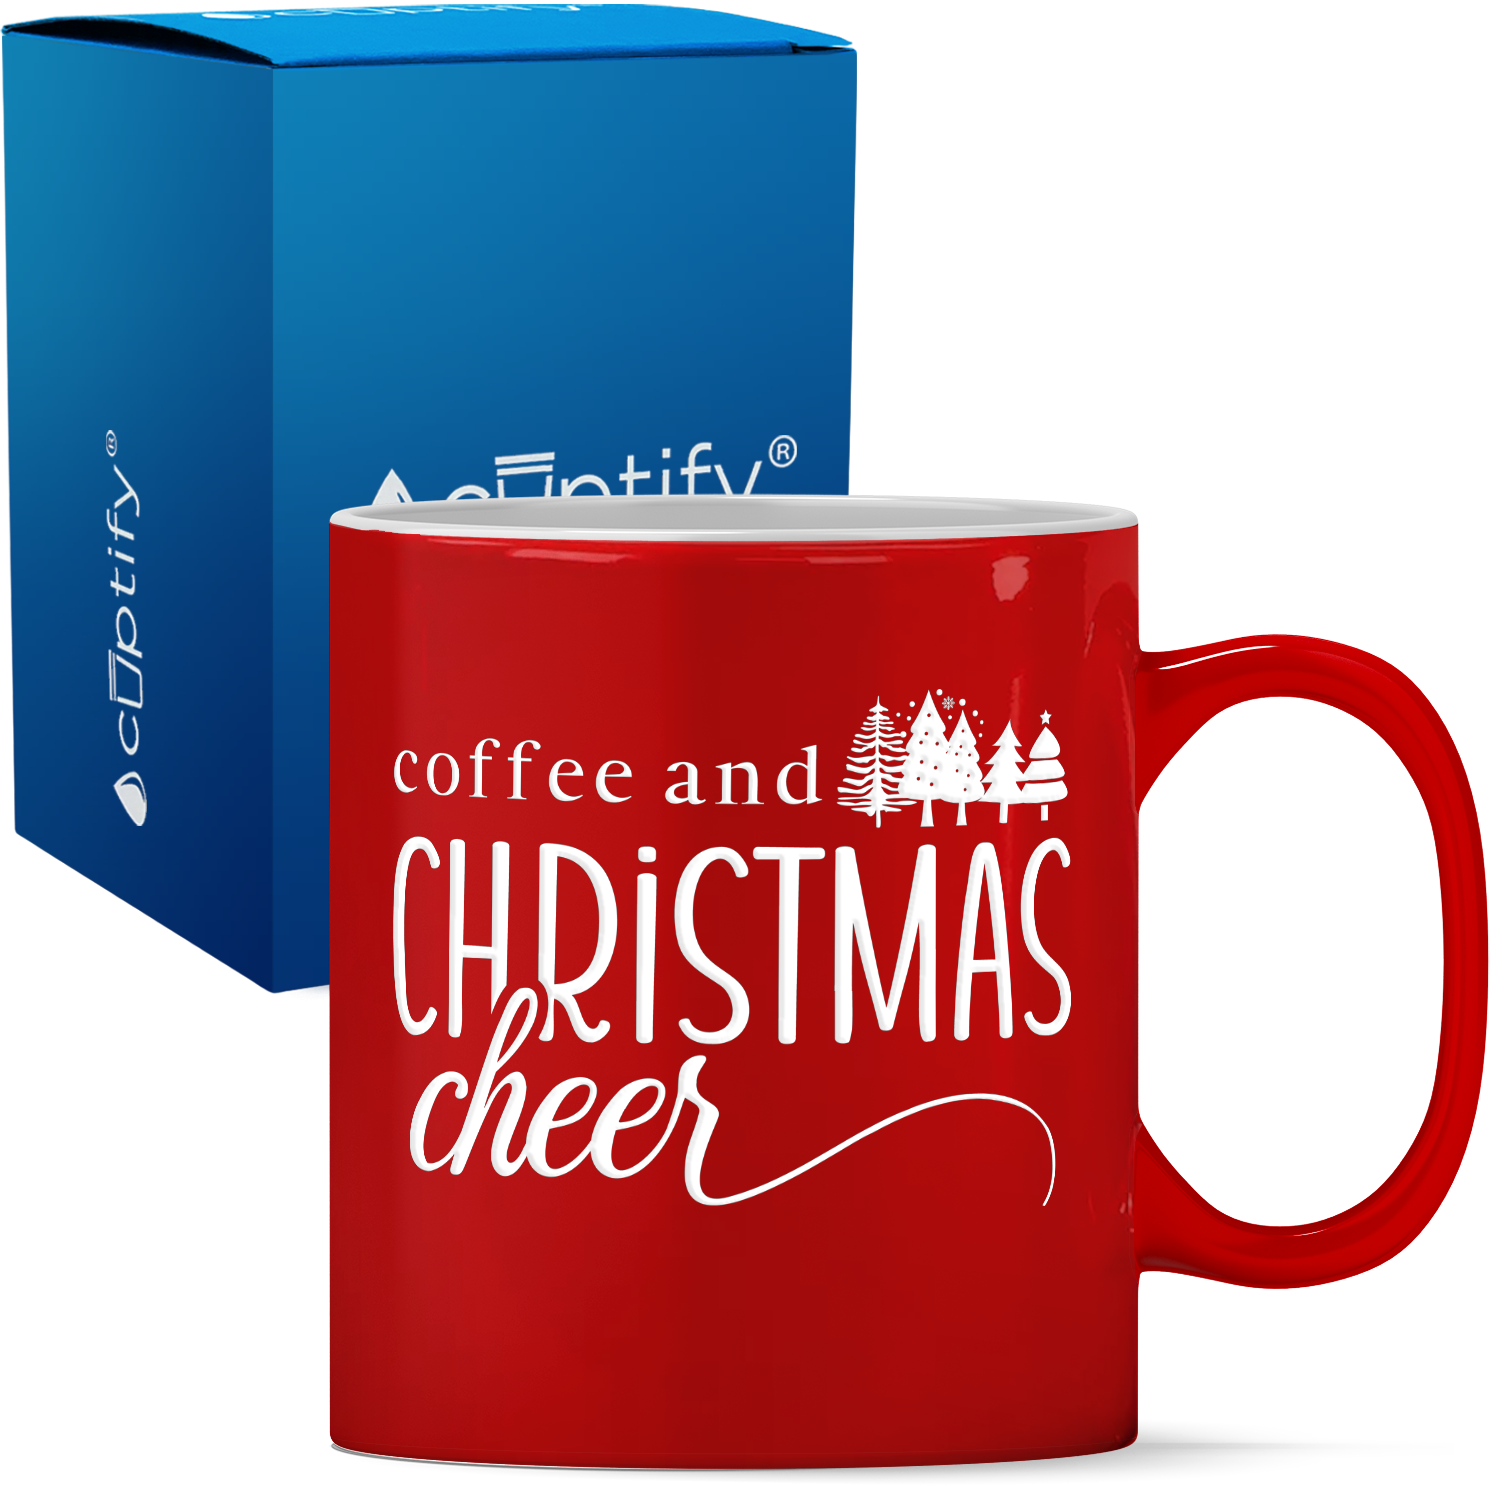 Coffe and Christmas Cheer Personalized 11oz Red Christmas Coffee Mug